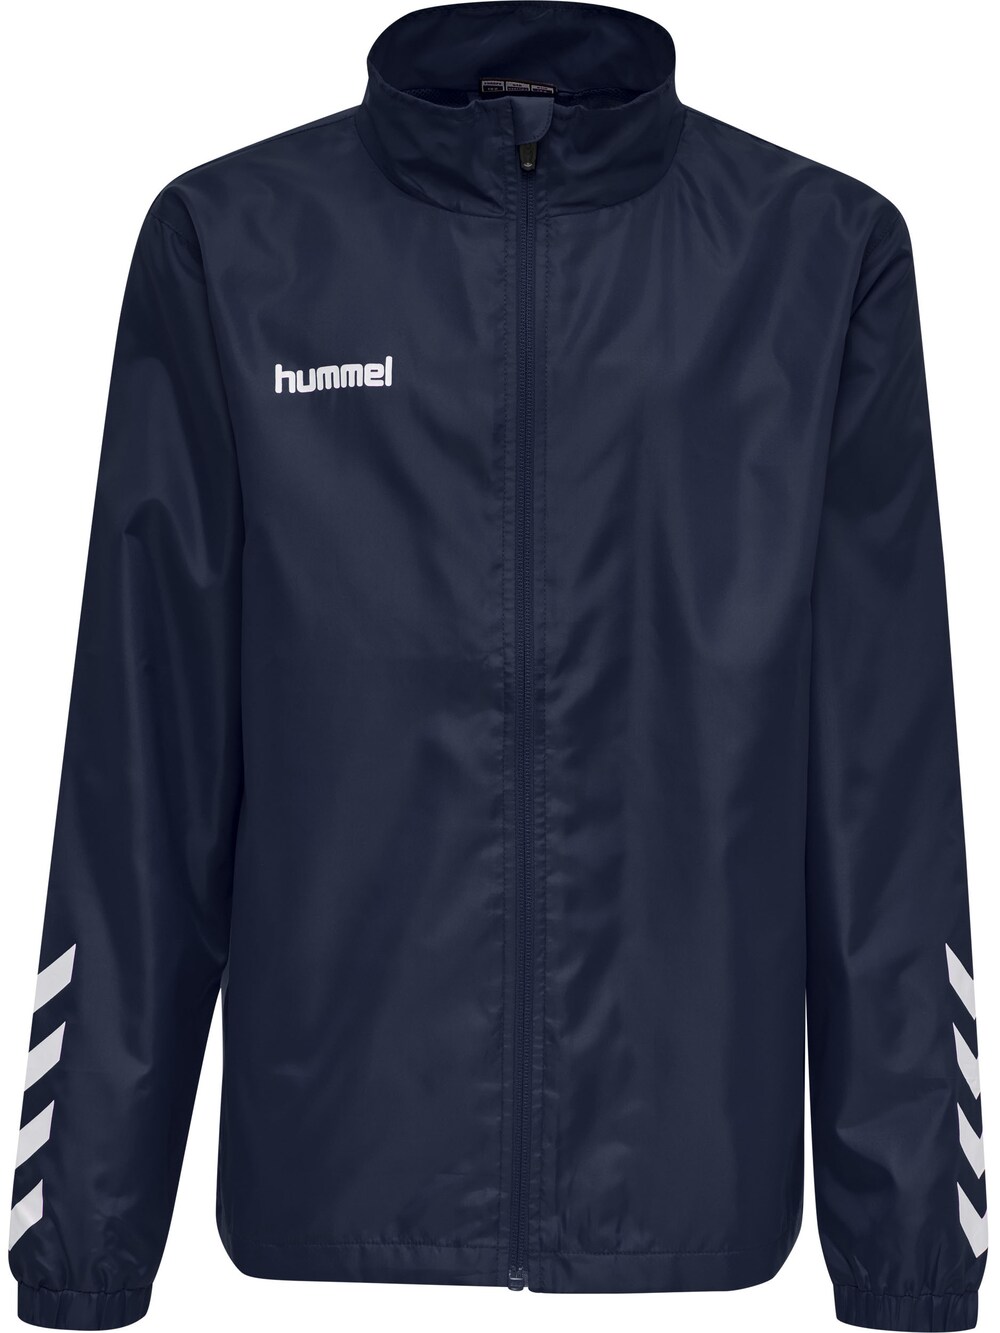 Спортивная куртка Hummel Promo, ночной синий